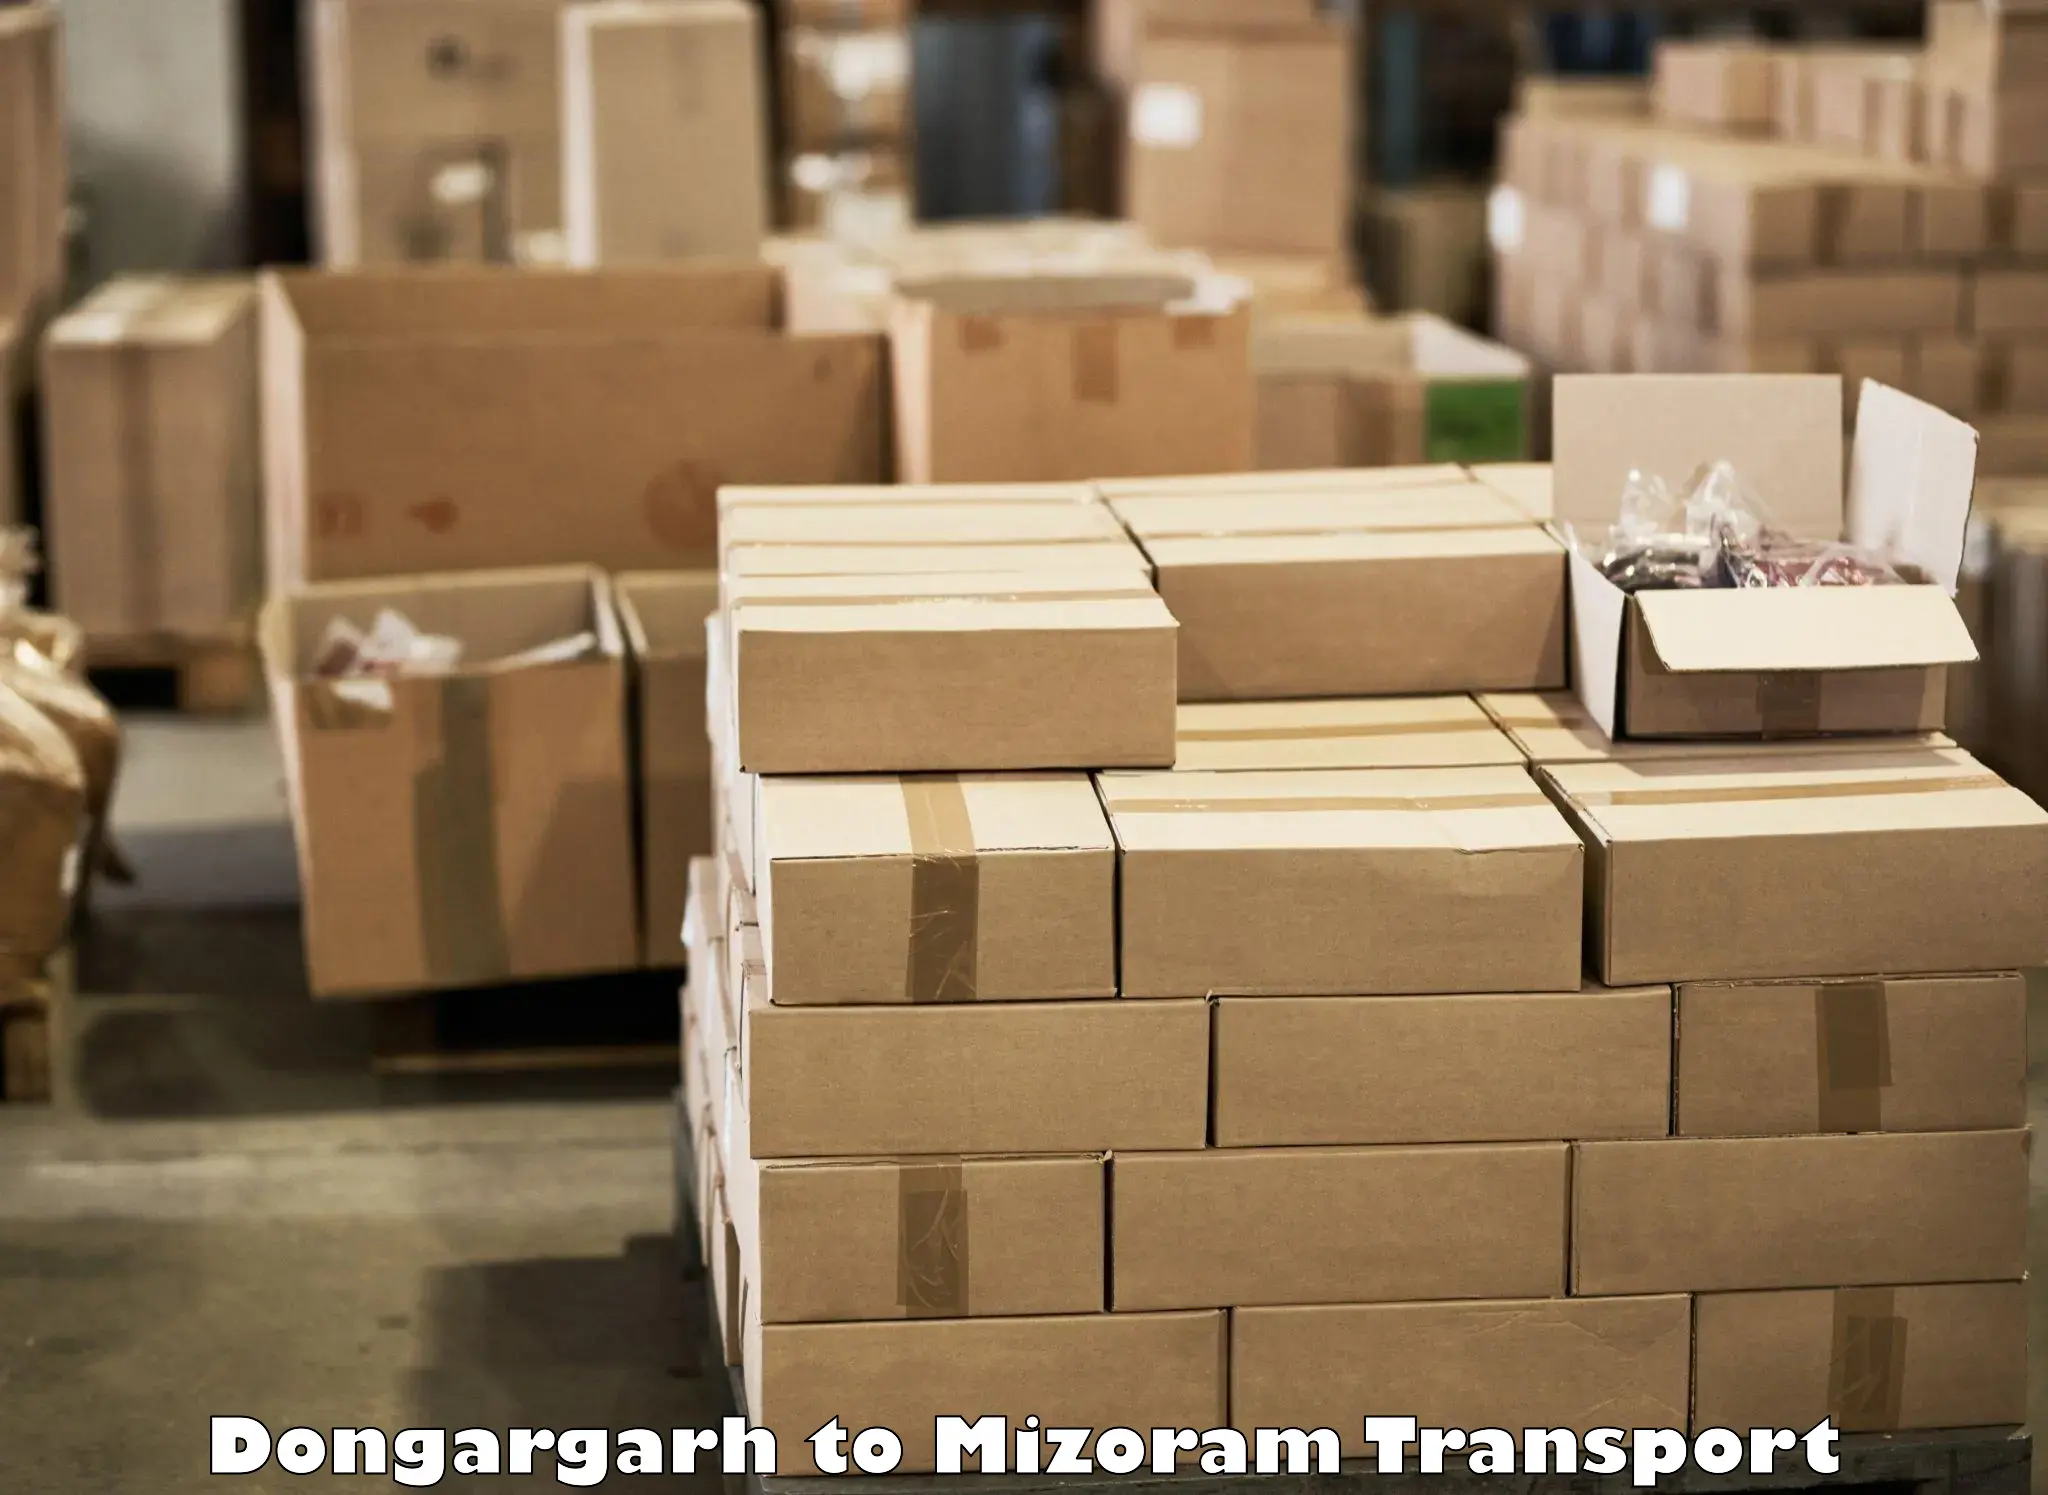 Furniture transport service in Dongargarh to Mizoram